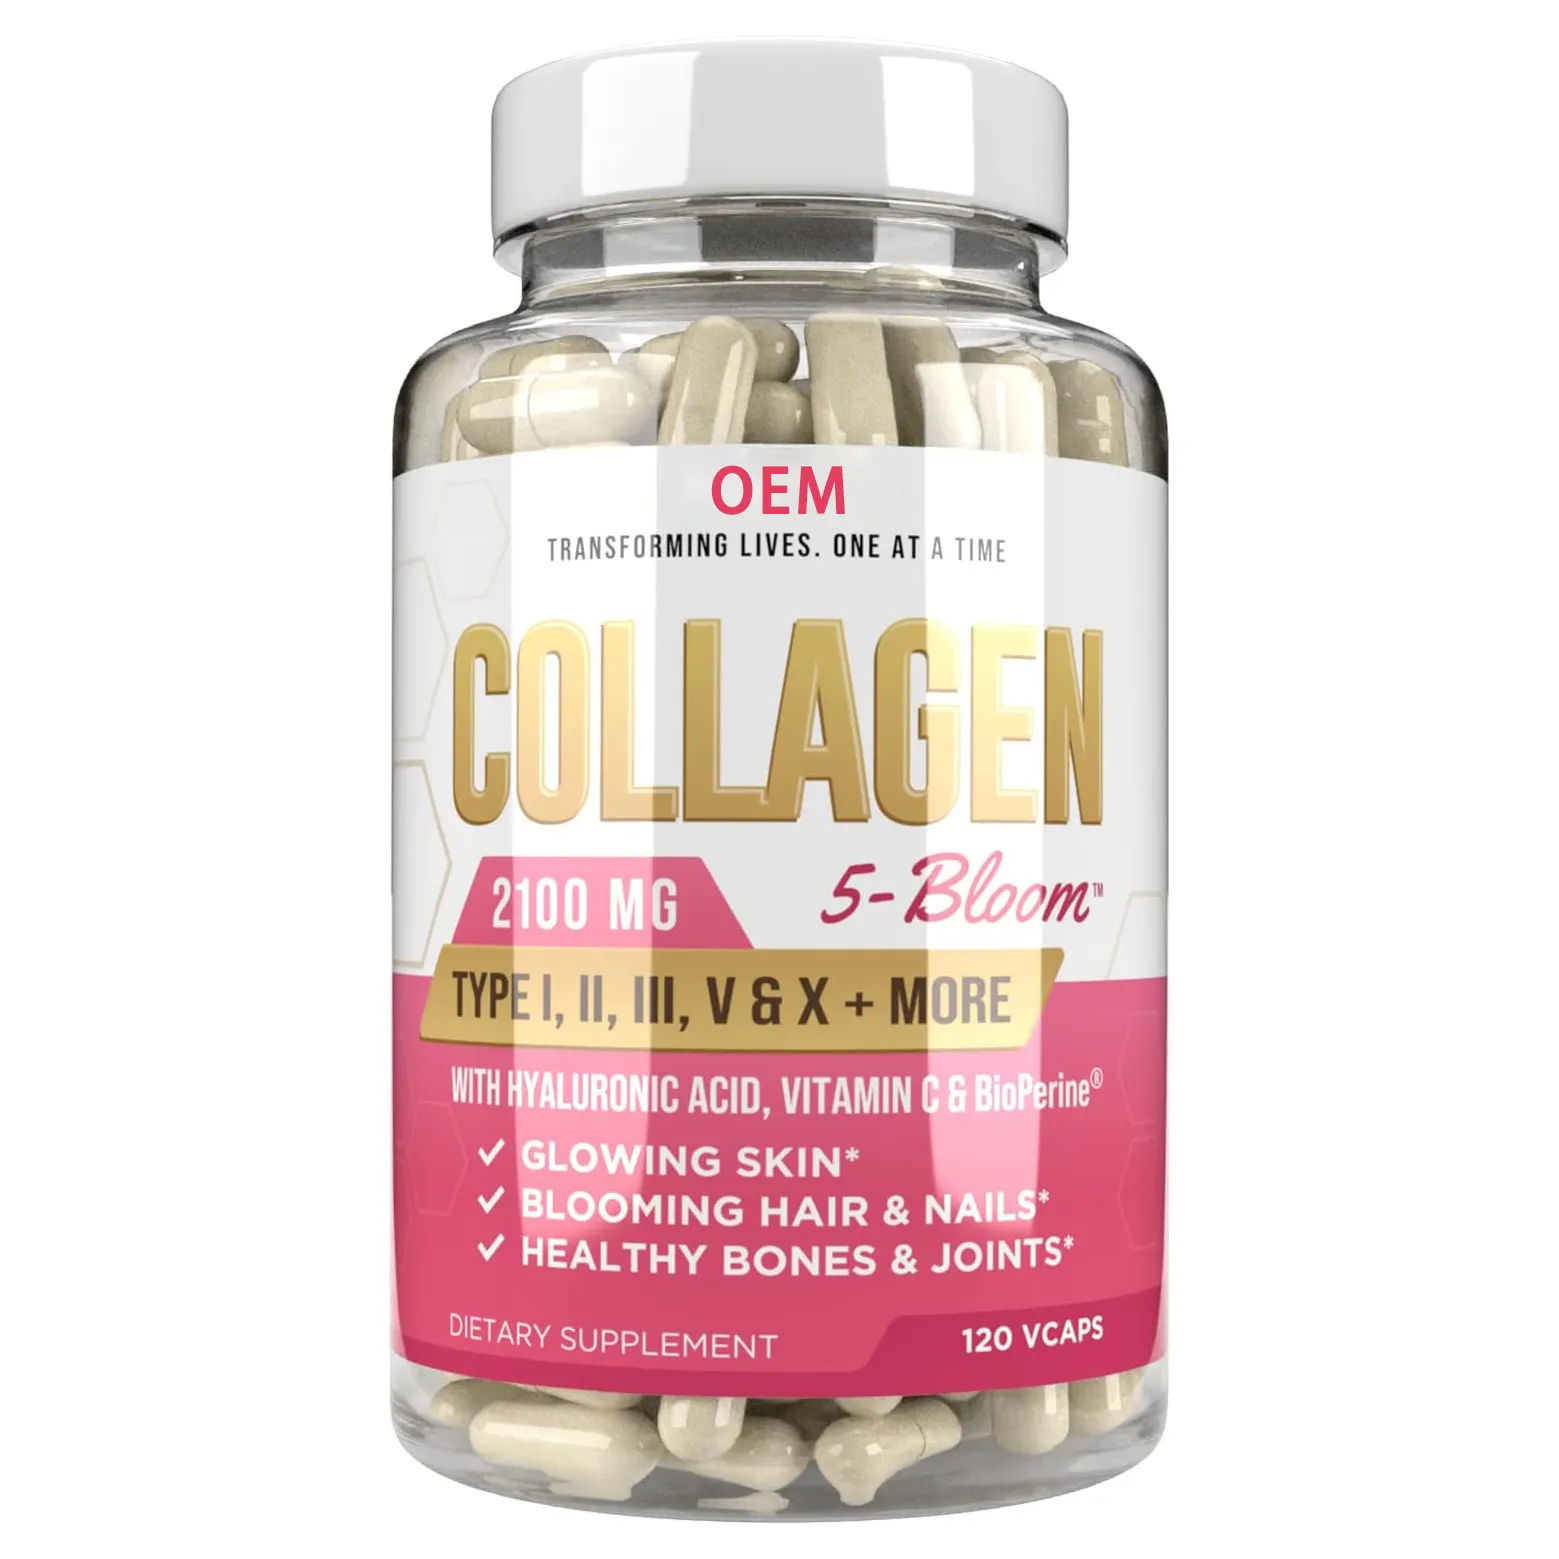 Healthcare Supplement Private Label fish collagen powder marine collagen